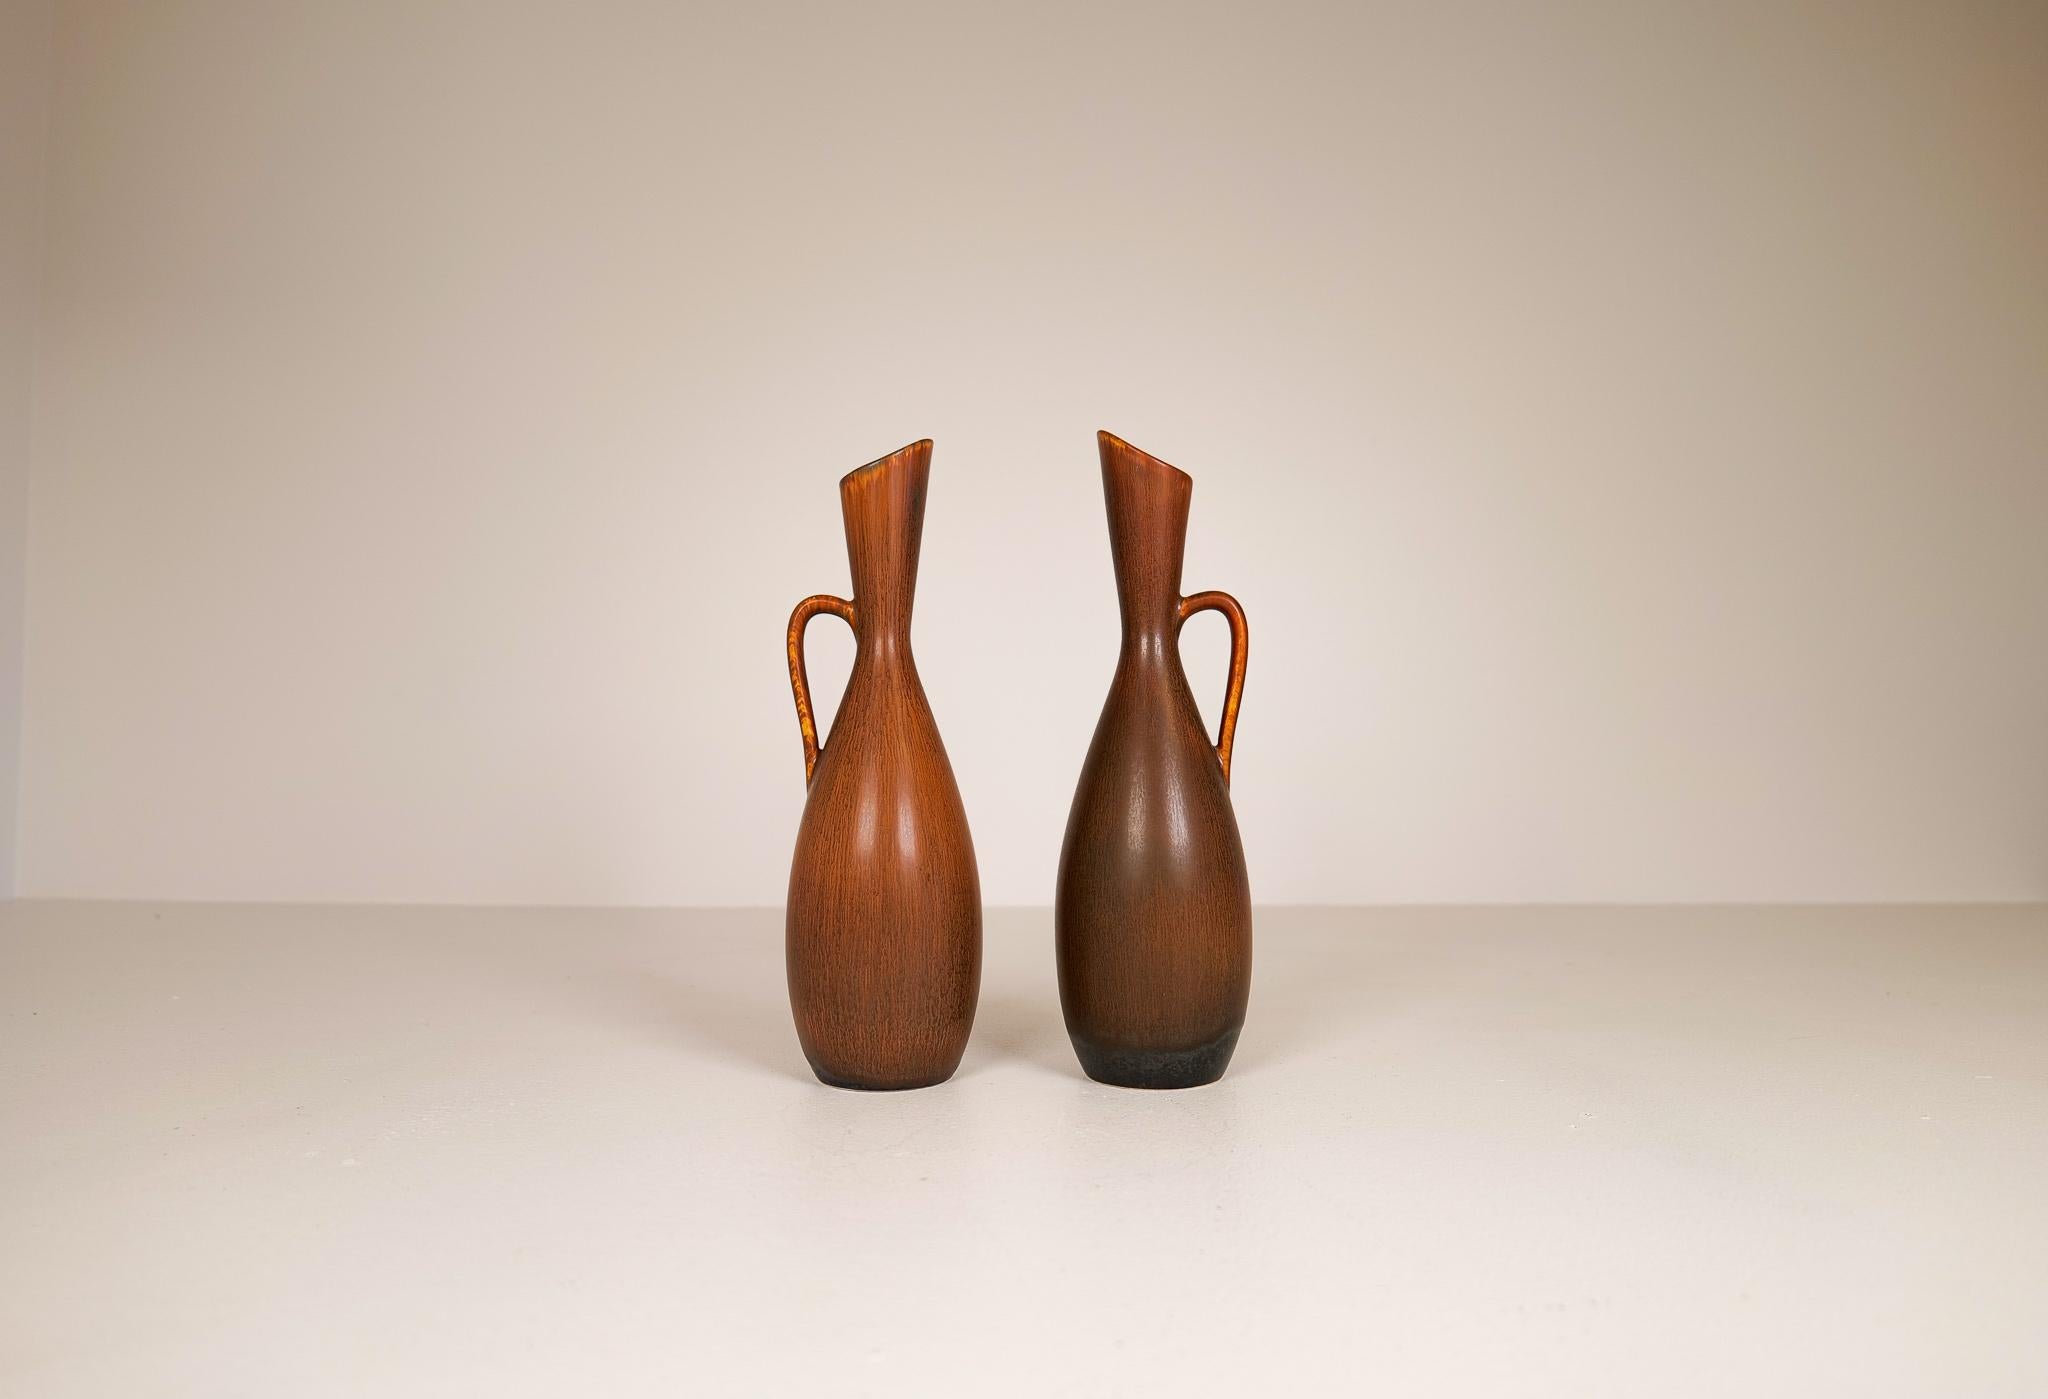 Grands vases du milieu du siècle fabriqués à Rörstrand et réalisés par le designer Carl Harry Stålhane. Fabriqué en Suède dans les années 1950. Magnifiques vases émaillés avec de belles lignes. Cette glaçure typique de la fourrure de lièvre,